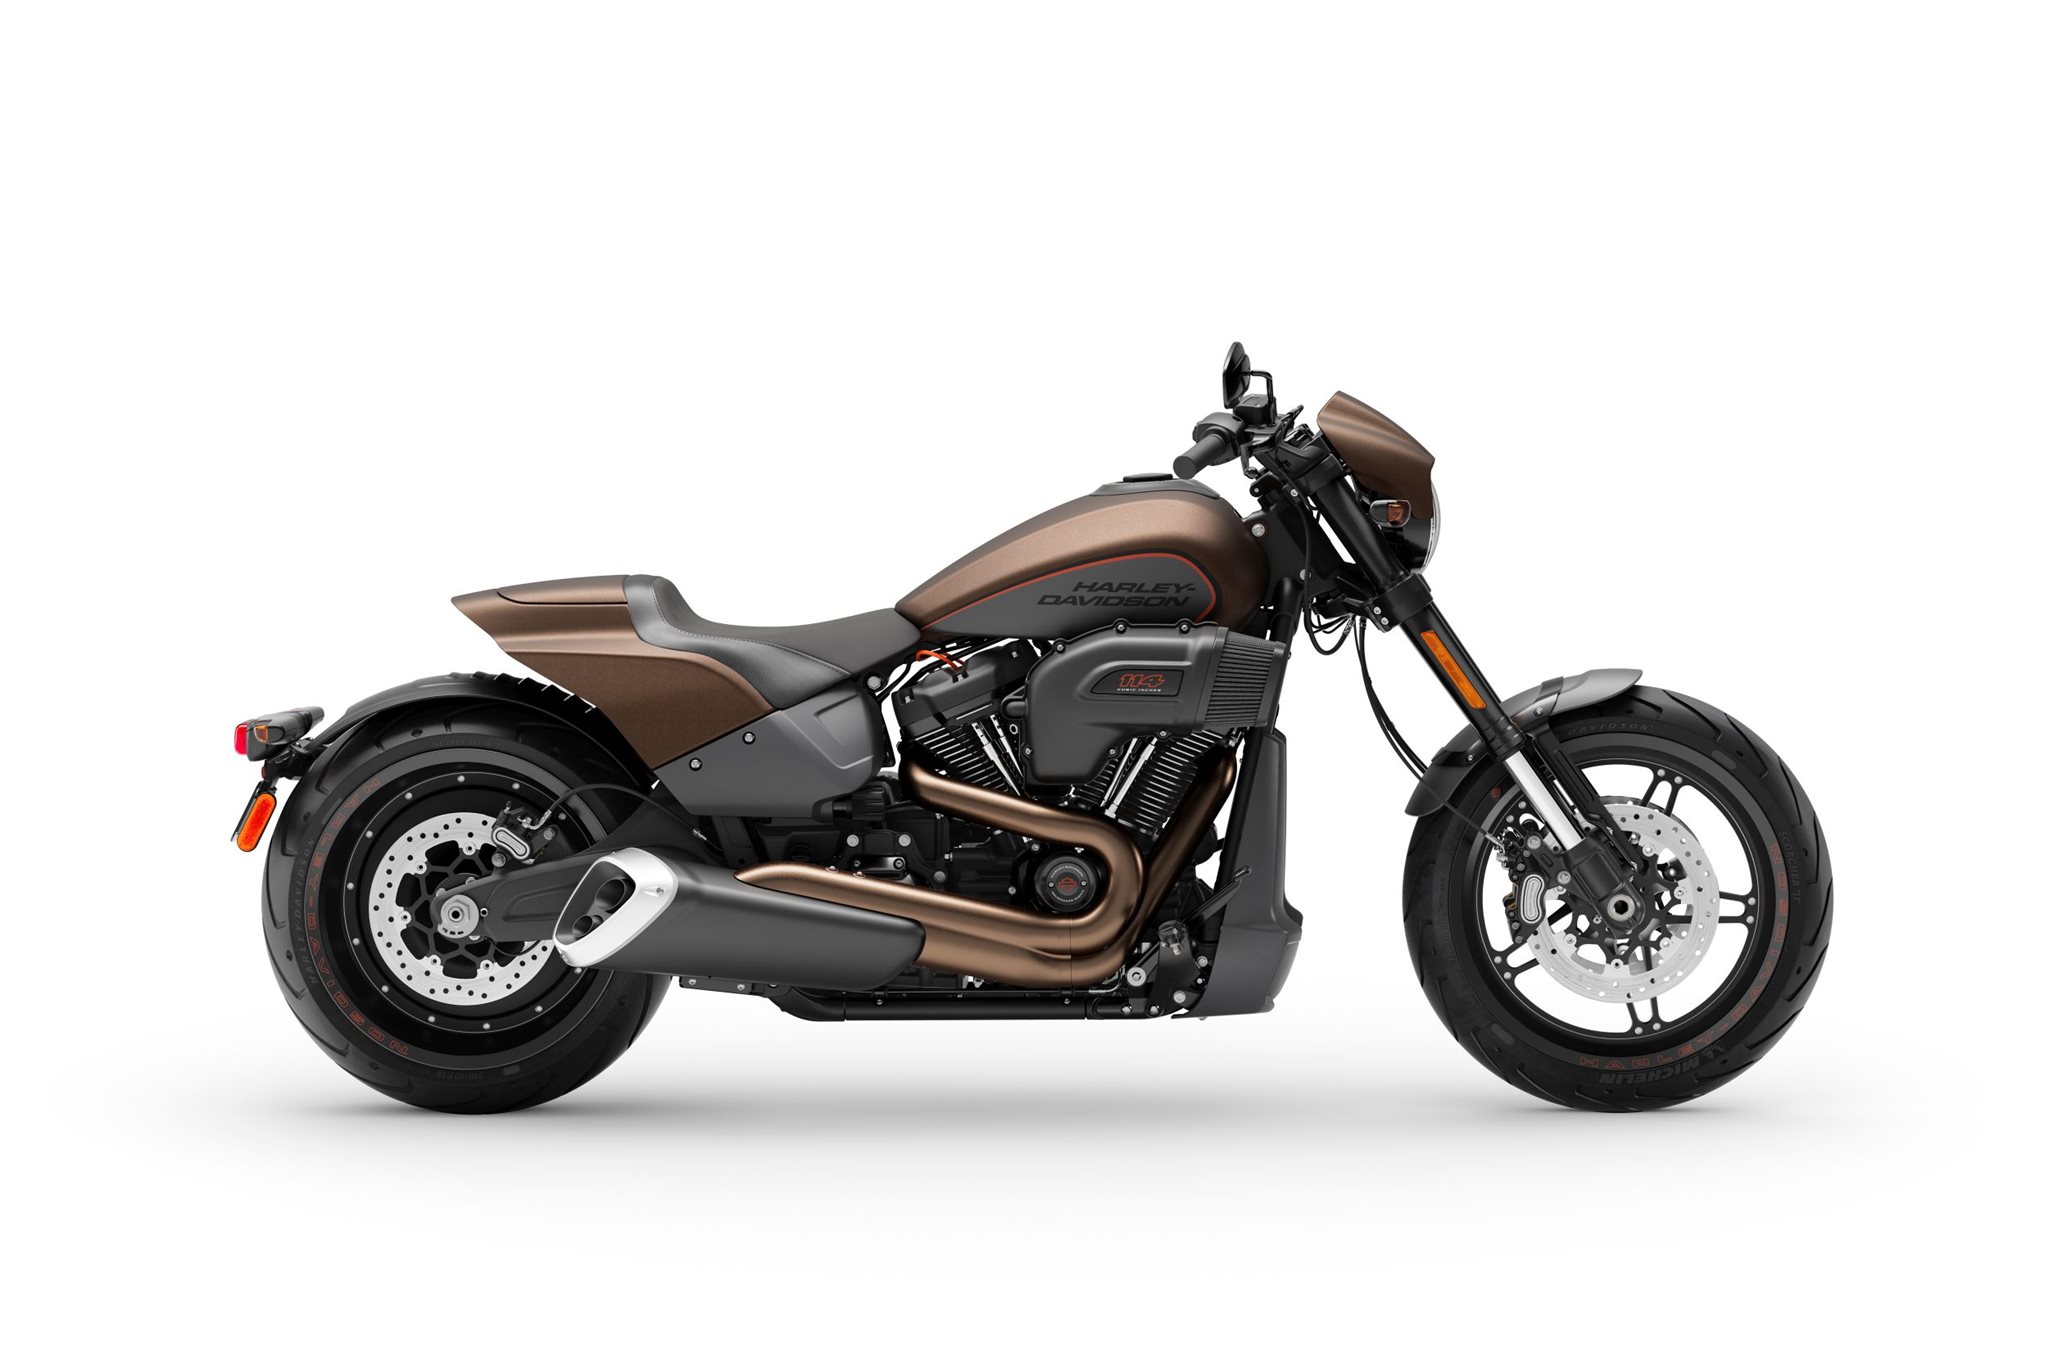 Motorrad Vergleich Harley Davidson Softail Breakout 114 Fxbrs 2021 Vs Harley Davidson Softail Fxdr 114 Fxdrs 2020